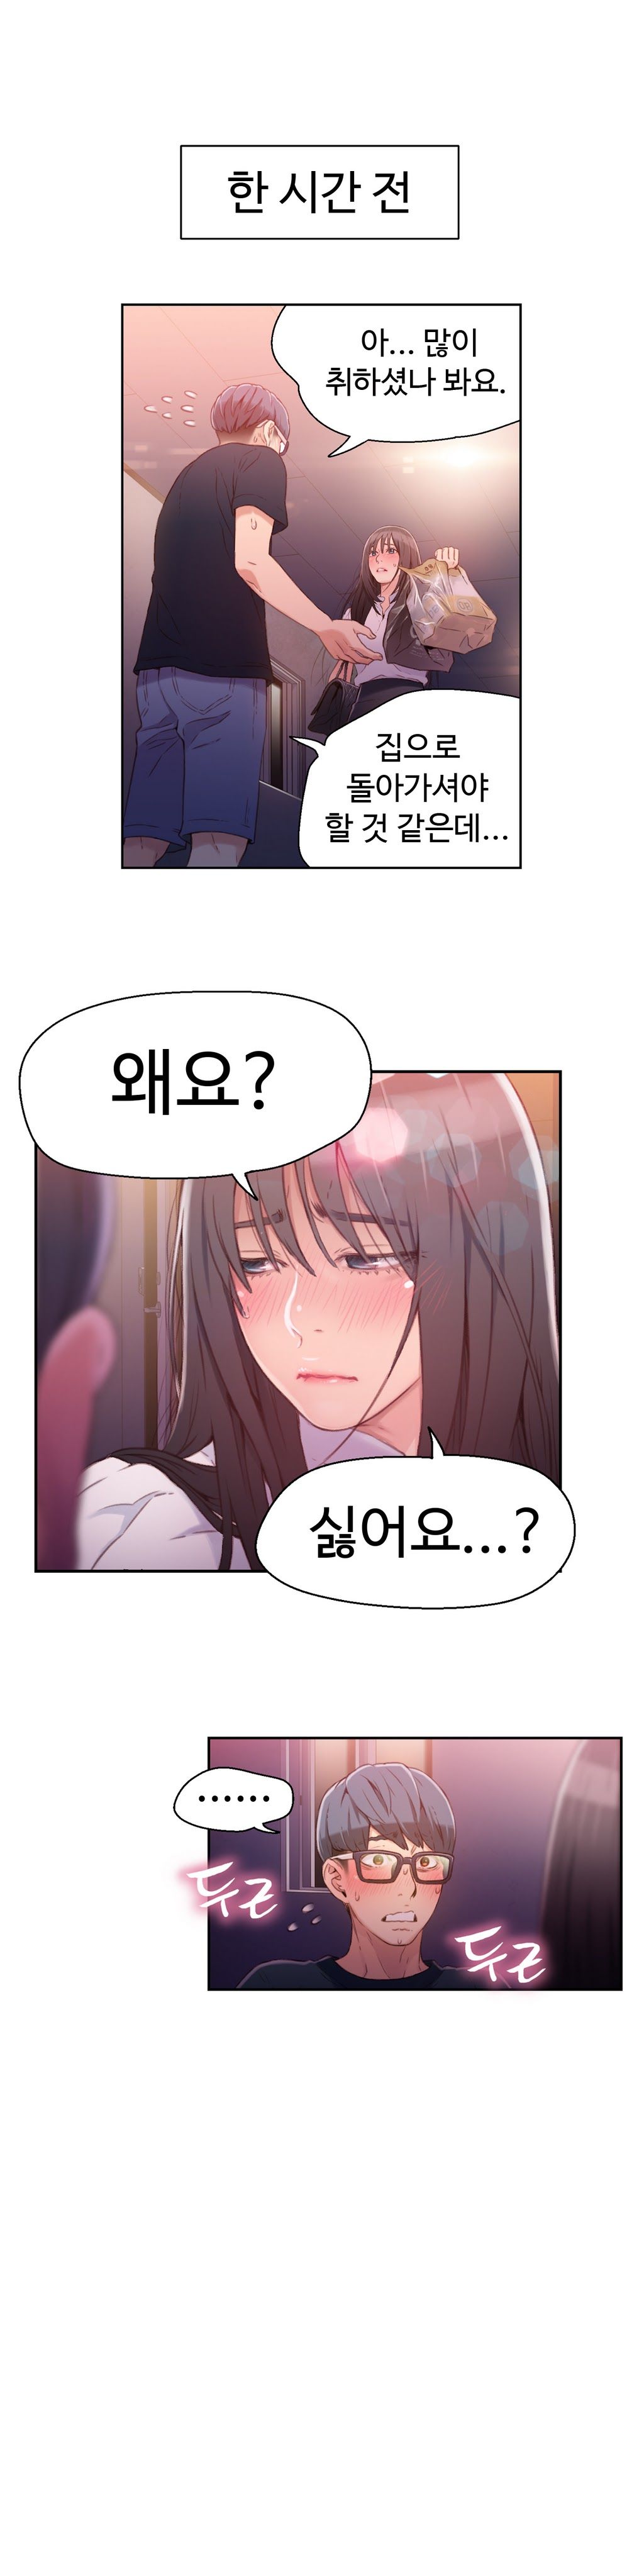 Sweet Guy Chapter 18 [Korean] (Full Color) Lezhin Comics 2wonsik2 4